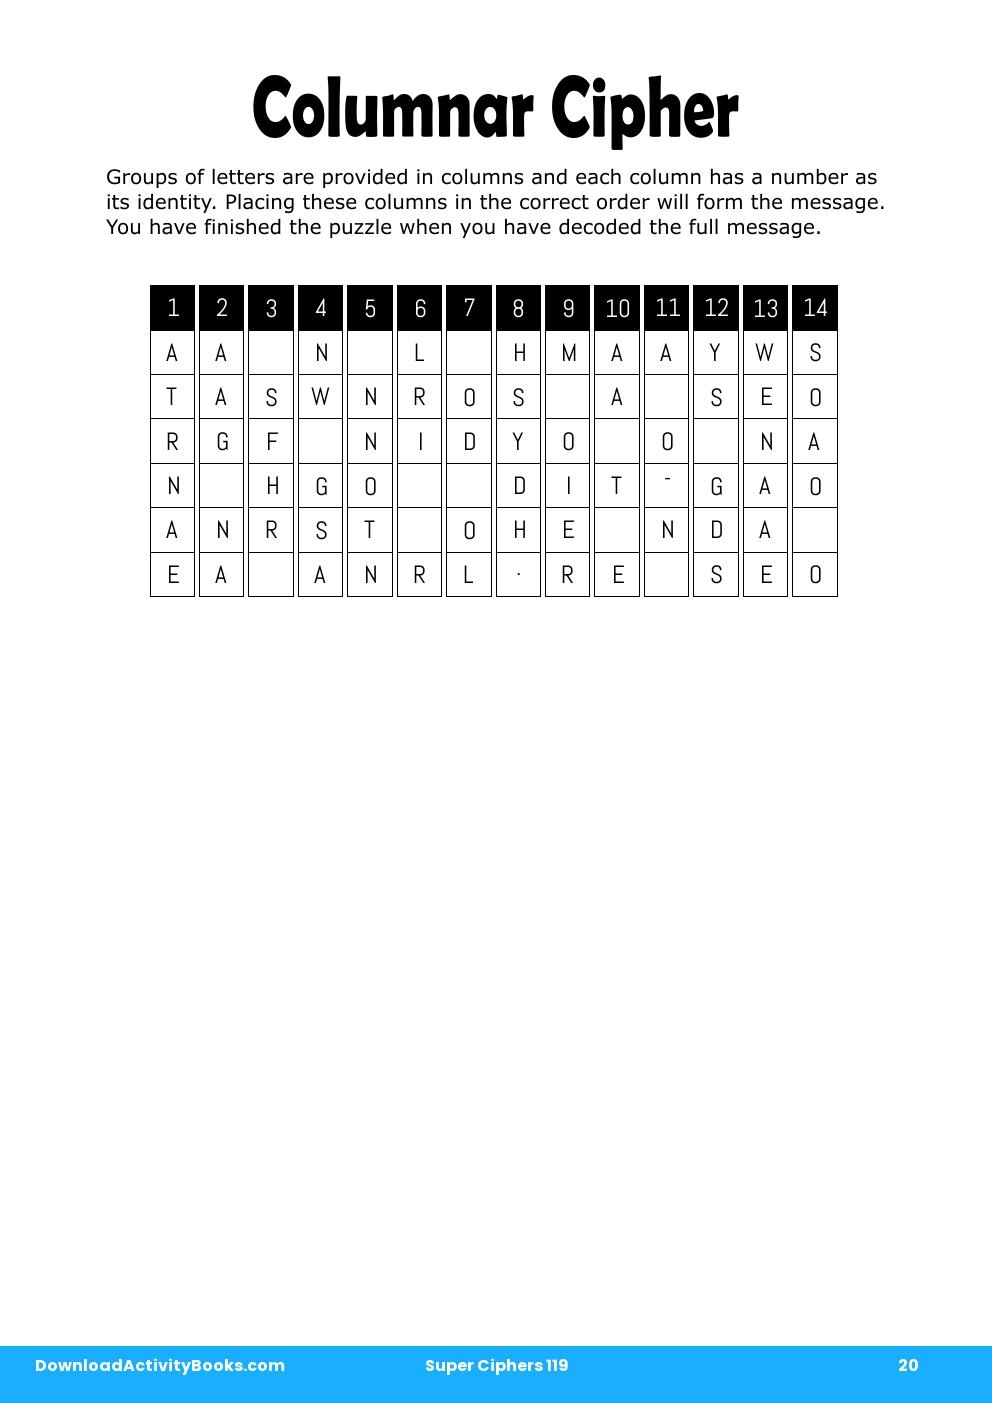 Columnar Cipher in Super Ciphers 119